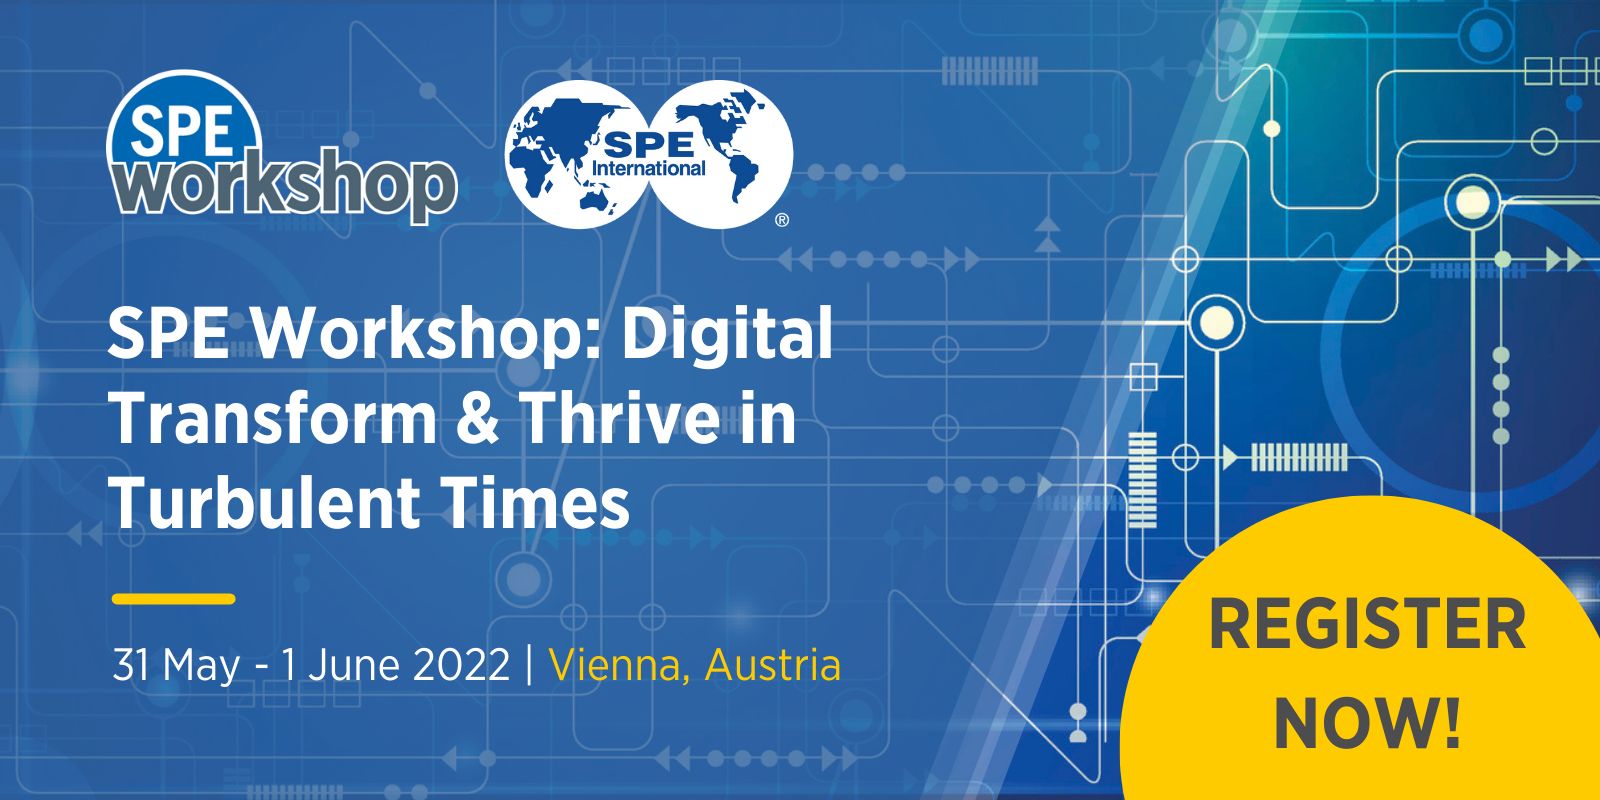 SPE Workshop: Digital Transform & Thrive in Turbulent Times